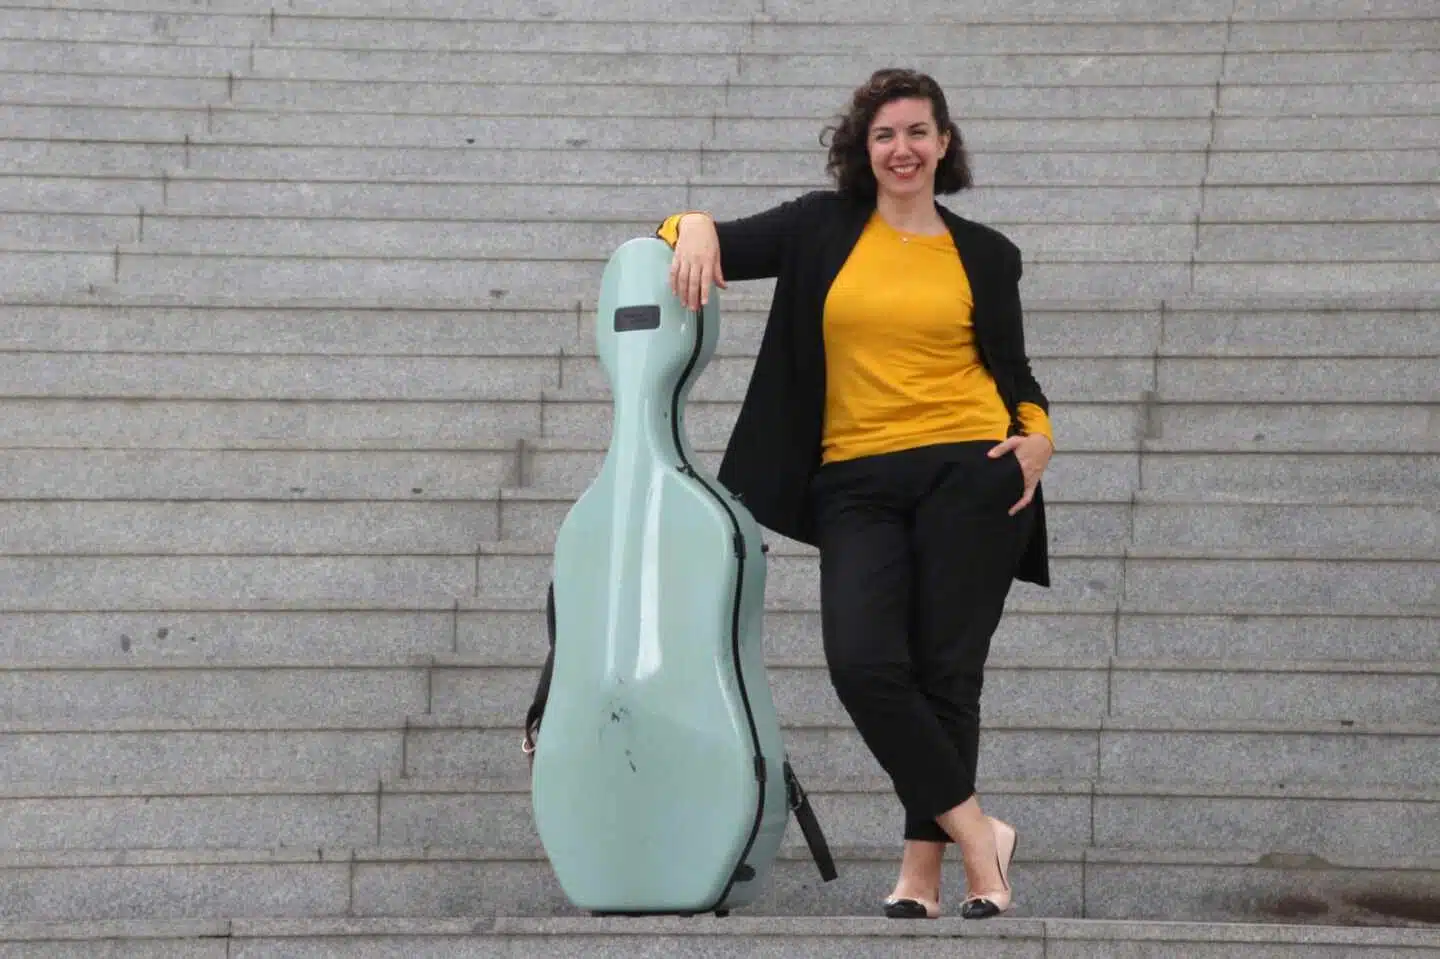 La violonchelista en el balcón: música para el vecindario en medio de la cuarentena